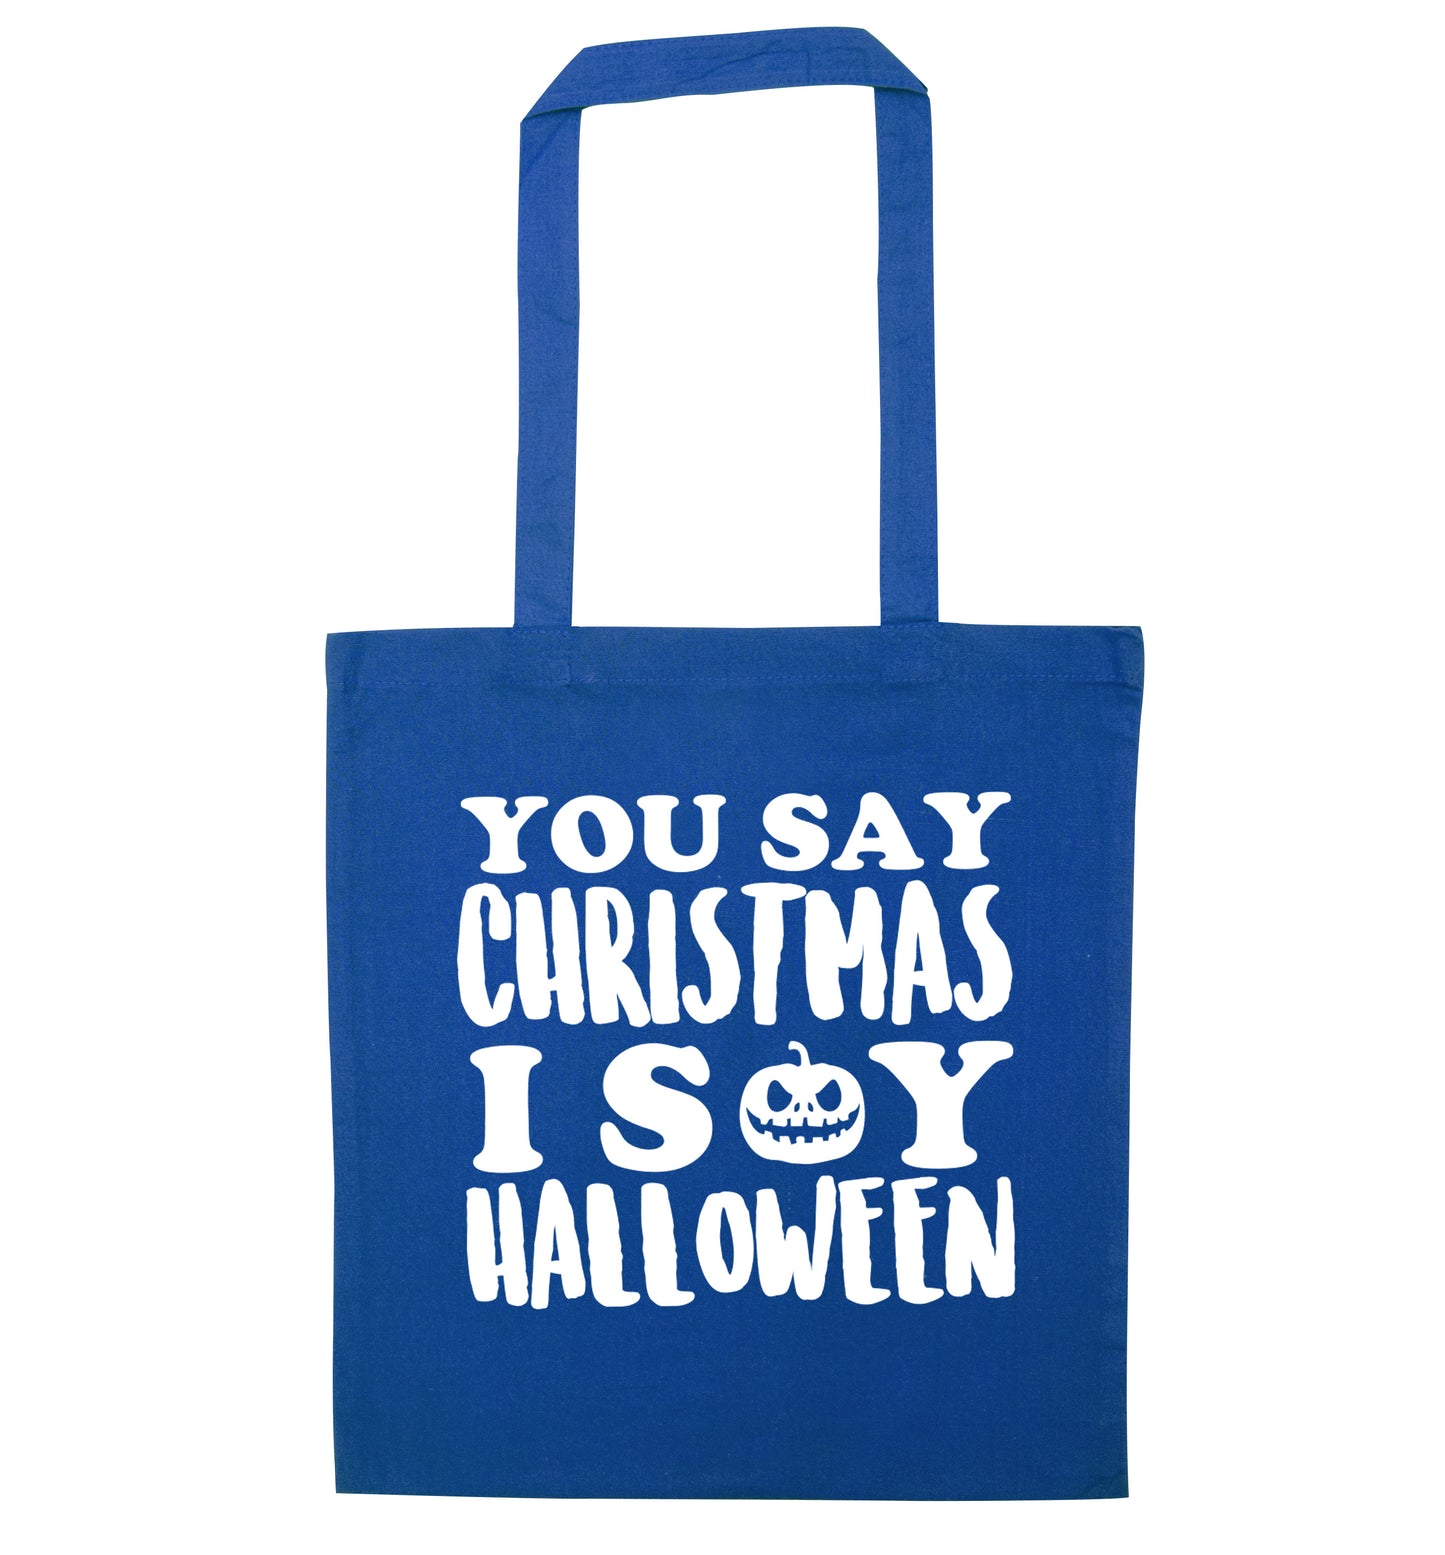 You say christmas I say halloween! blue tote bag